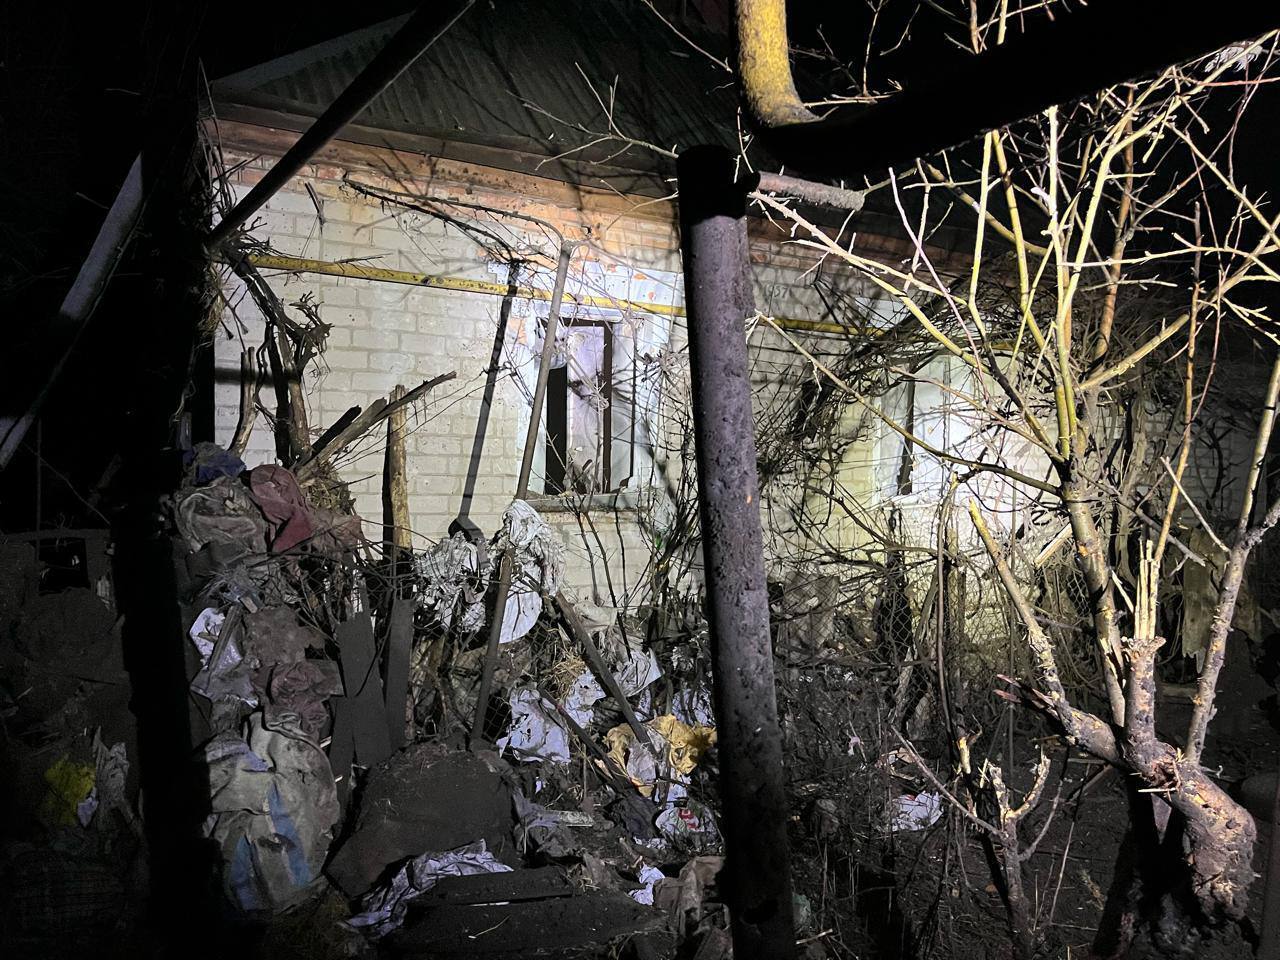 На Дніпропетровщині через падіння уламків дронів виникла пожежа: є постраждалий. Фото